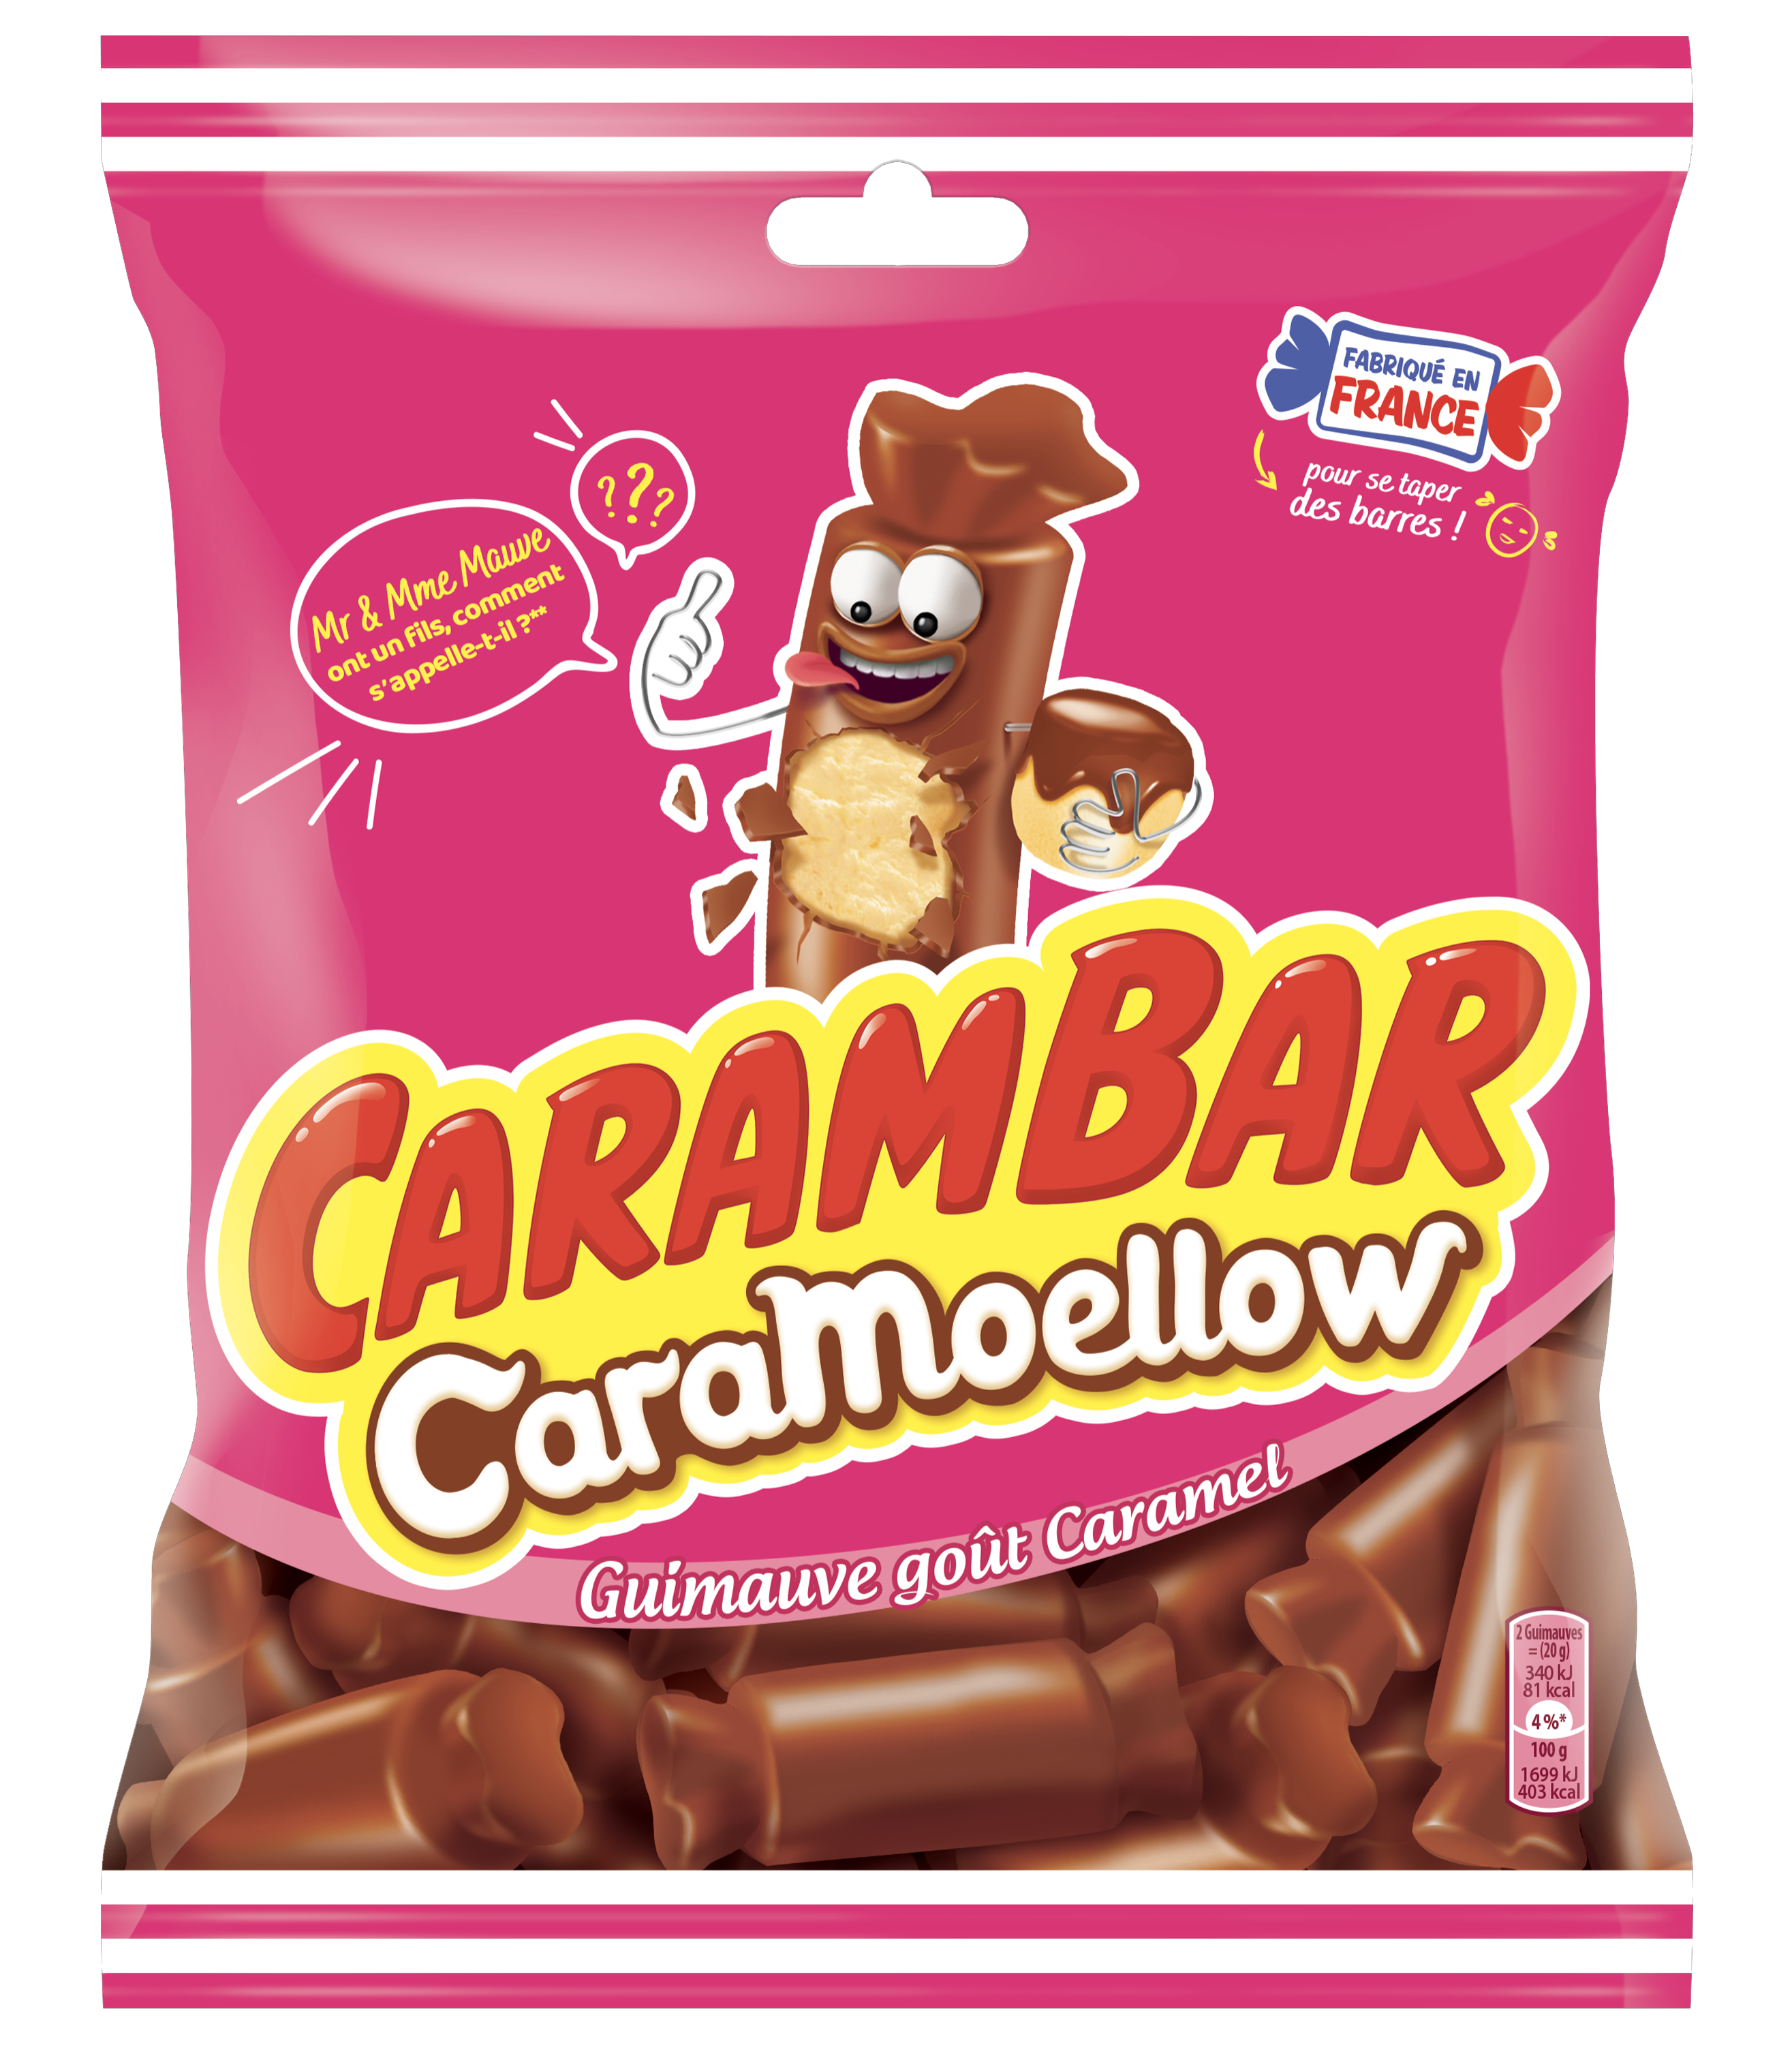 Caramoellow, la nouvelle guimauve gout caramel